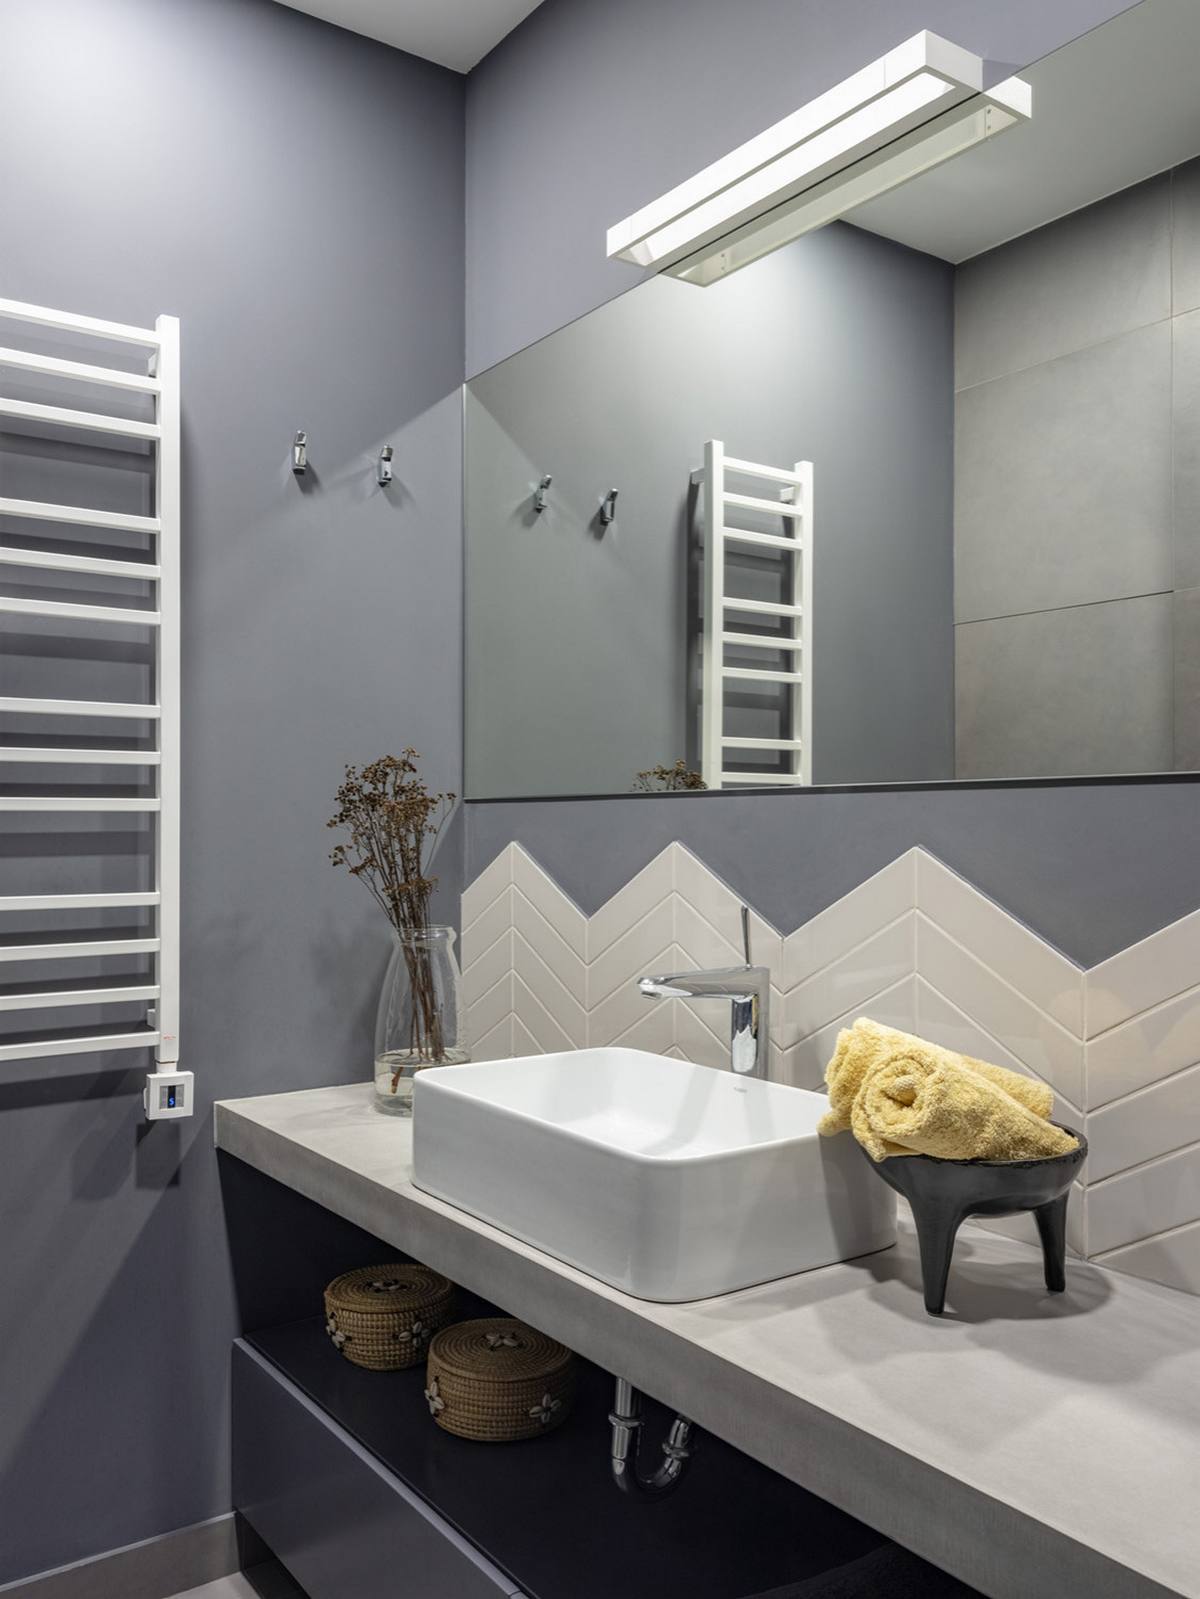 Phòng tắm kết hợp sơn tường xám nhạt chủ đạo với gạch ốp họa tiết xương cá màu trắng sáng bóng tạo điểm nhấn thu hút. Bức tường trên bồn rửa ốp gương cỡ lớn có thiết kế đơn giản, không viền khung, nhằm 'nhân đôi' không gian bằng thị giác.